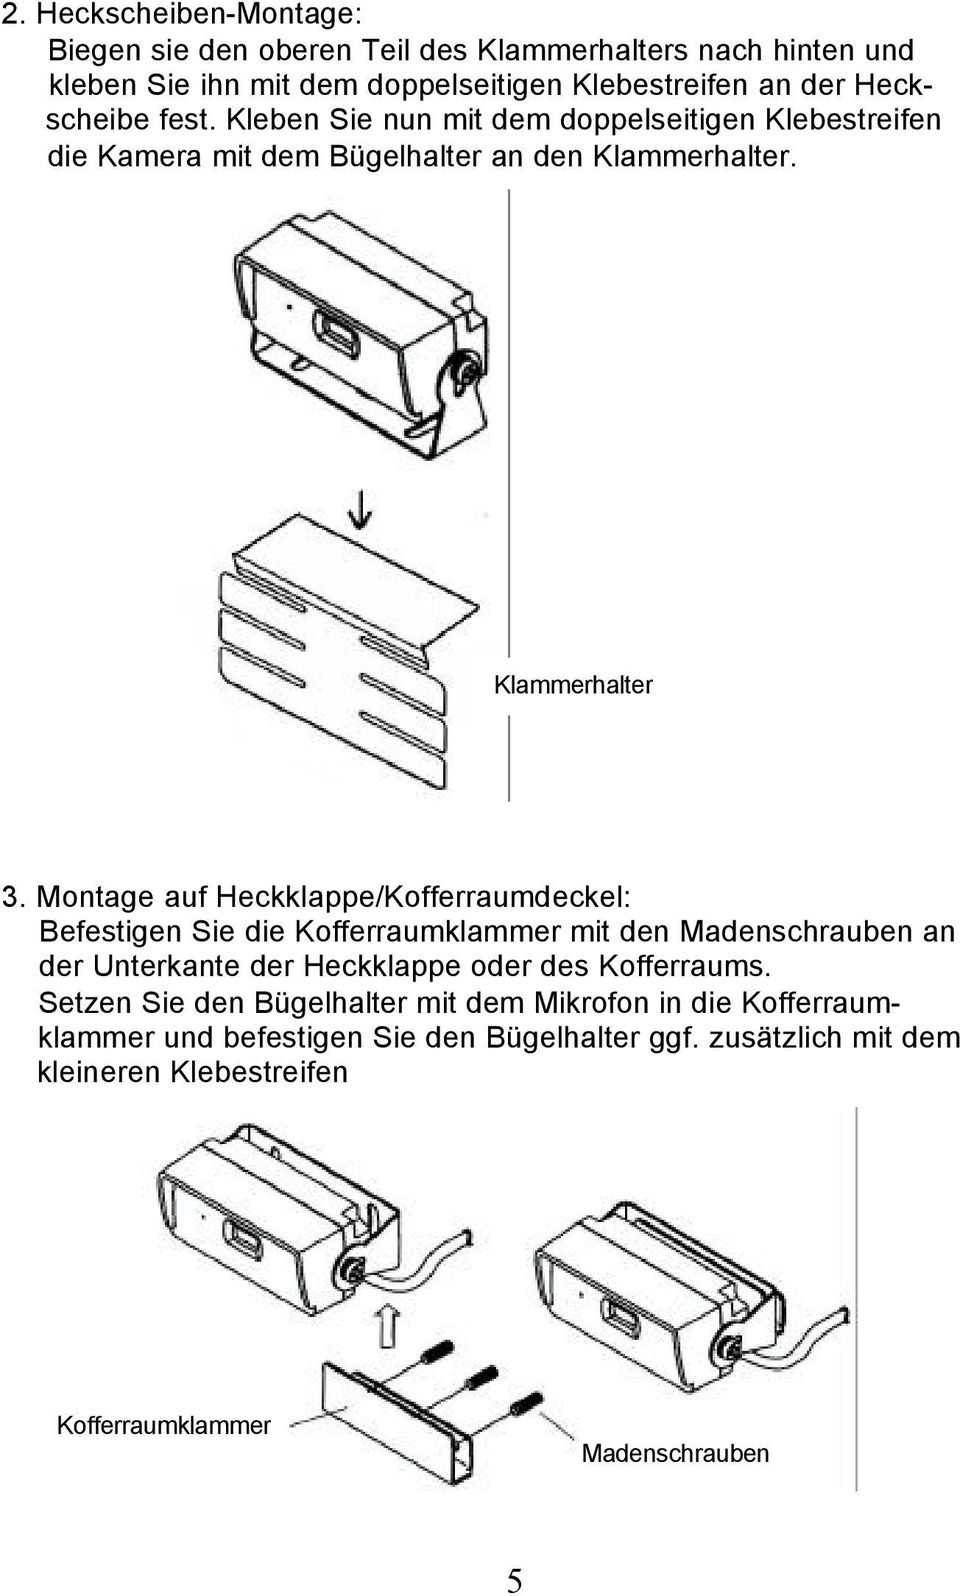 Montage auf Heckklappe/Kofferraumdeckel: Befestigen Sie die Kofferraumklammer mit den Madenschrauben an der Unterkante der Heckklappe oder des Kofferraums.